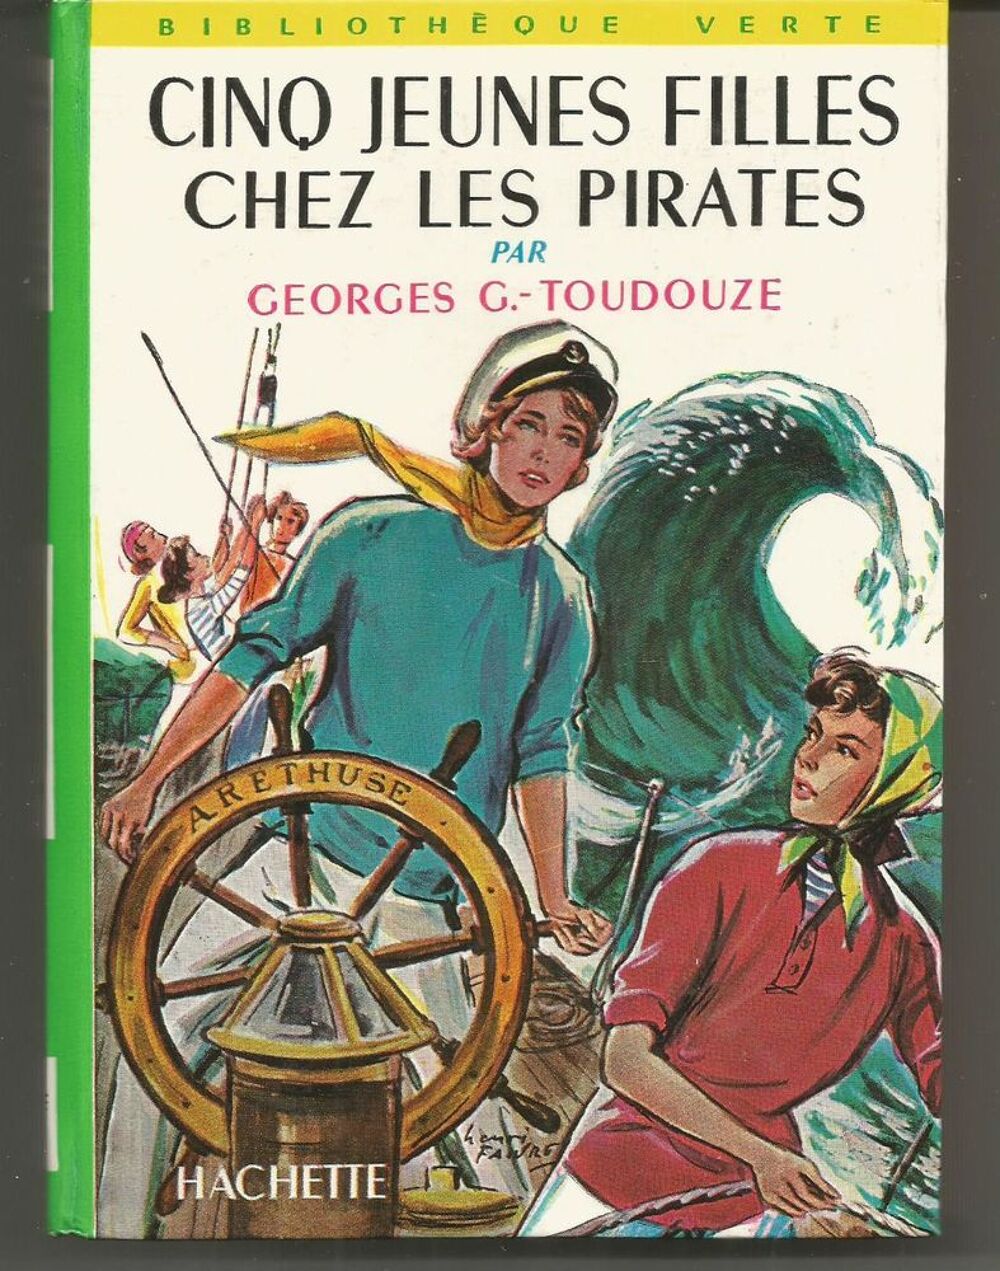 Cinq jeunes filles chez les pirates par Georges G TOUDOUZE Livres et BD